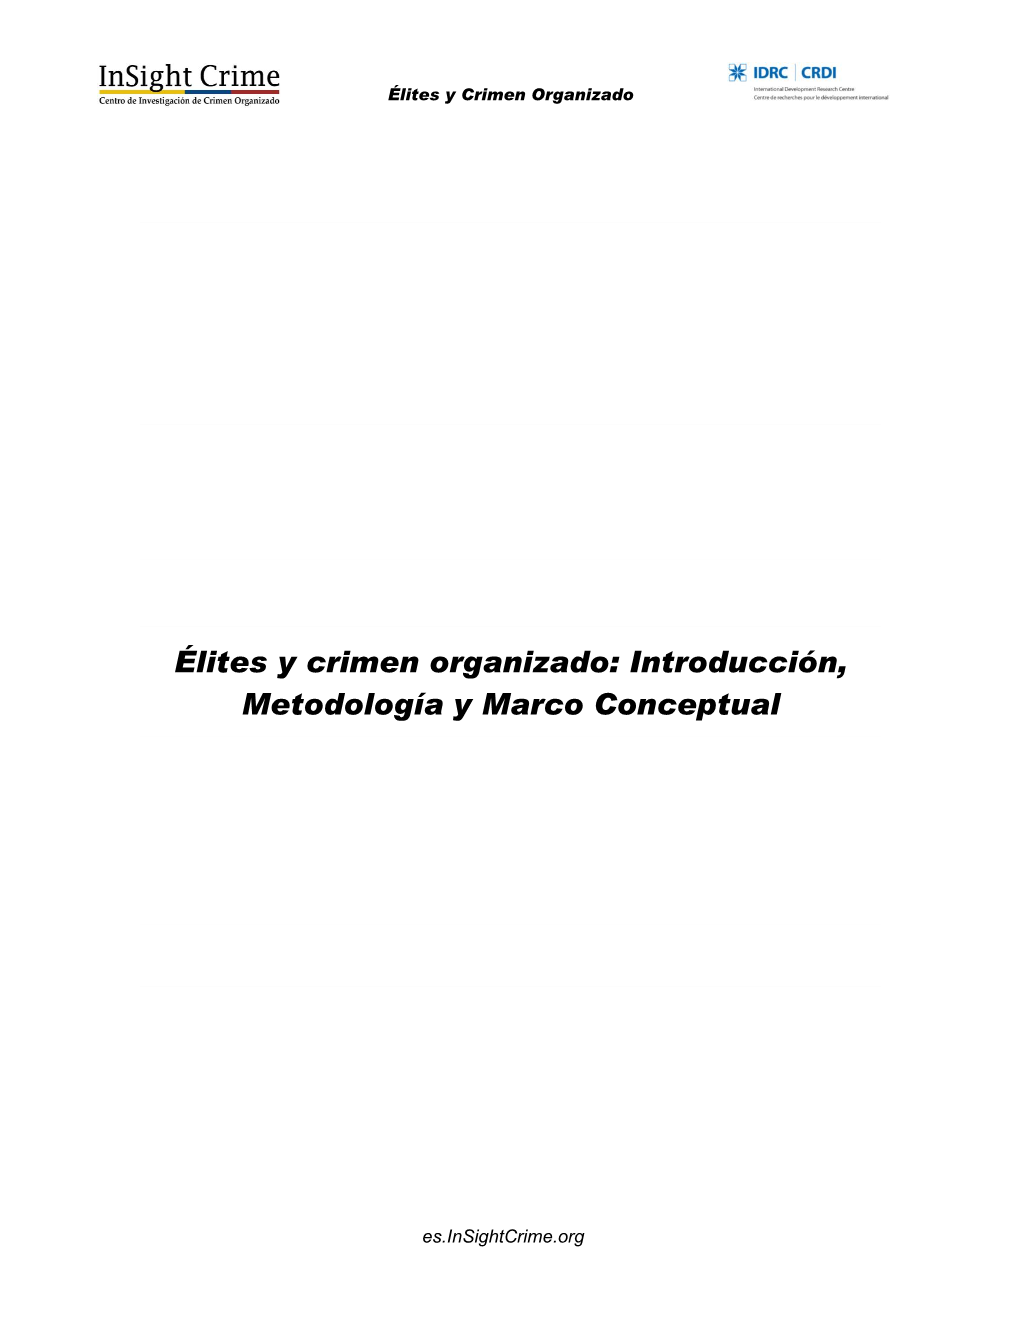 Élites Y Crimen Organizado: Introducción, Metodología Y Marco Conceptual